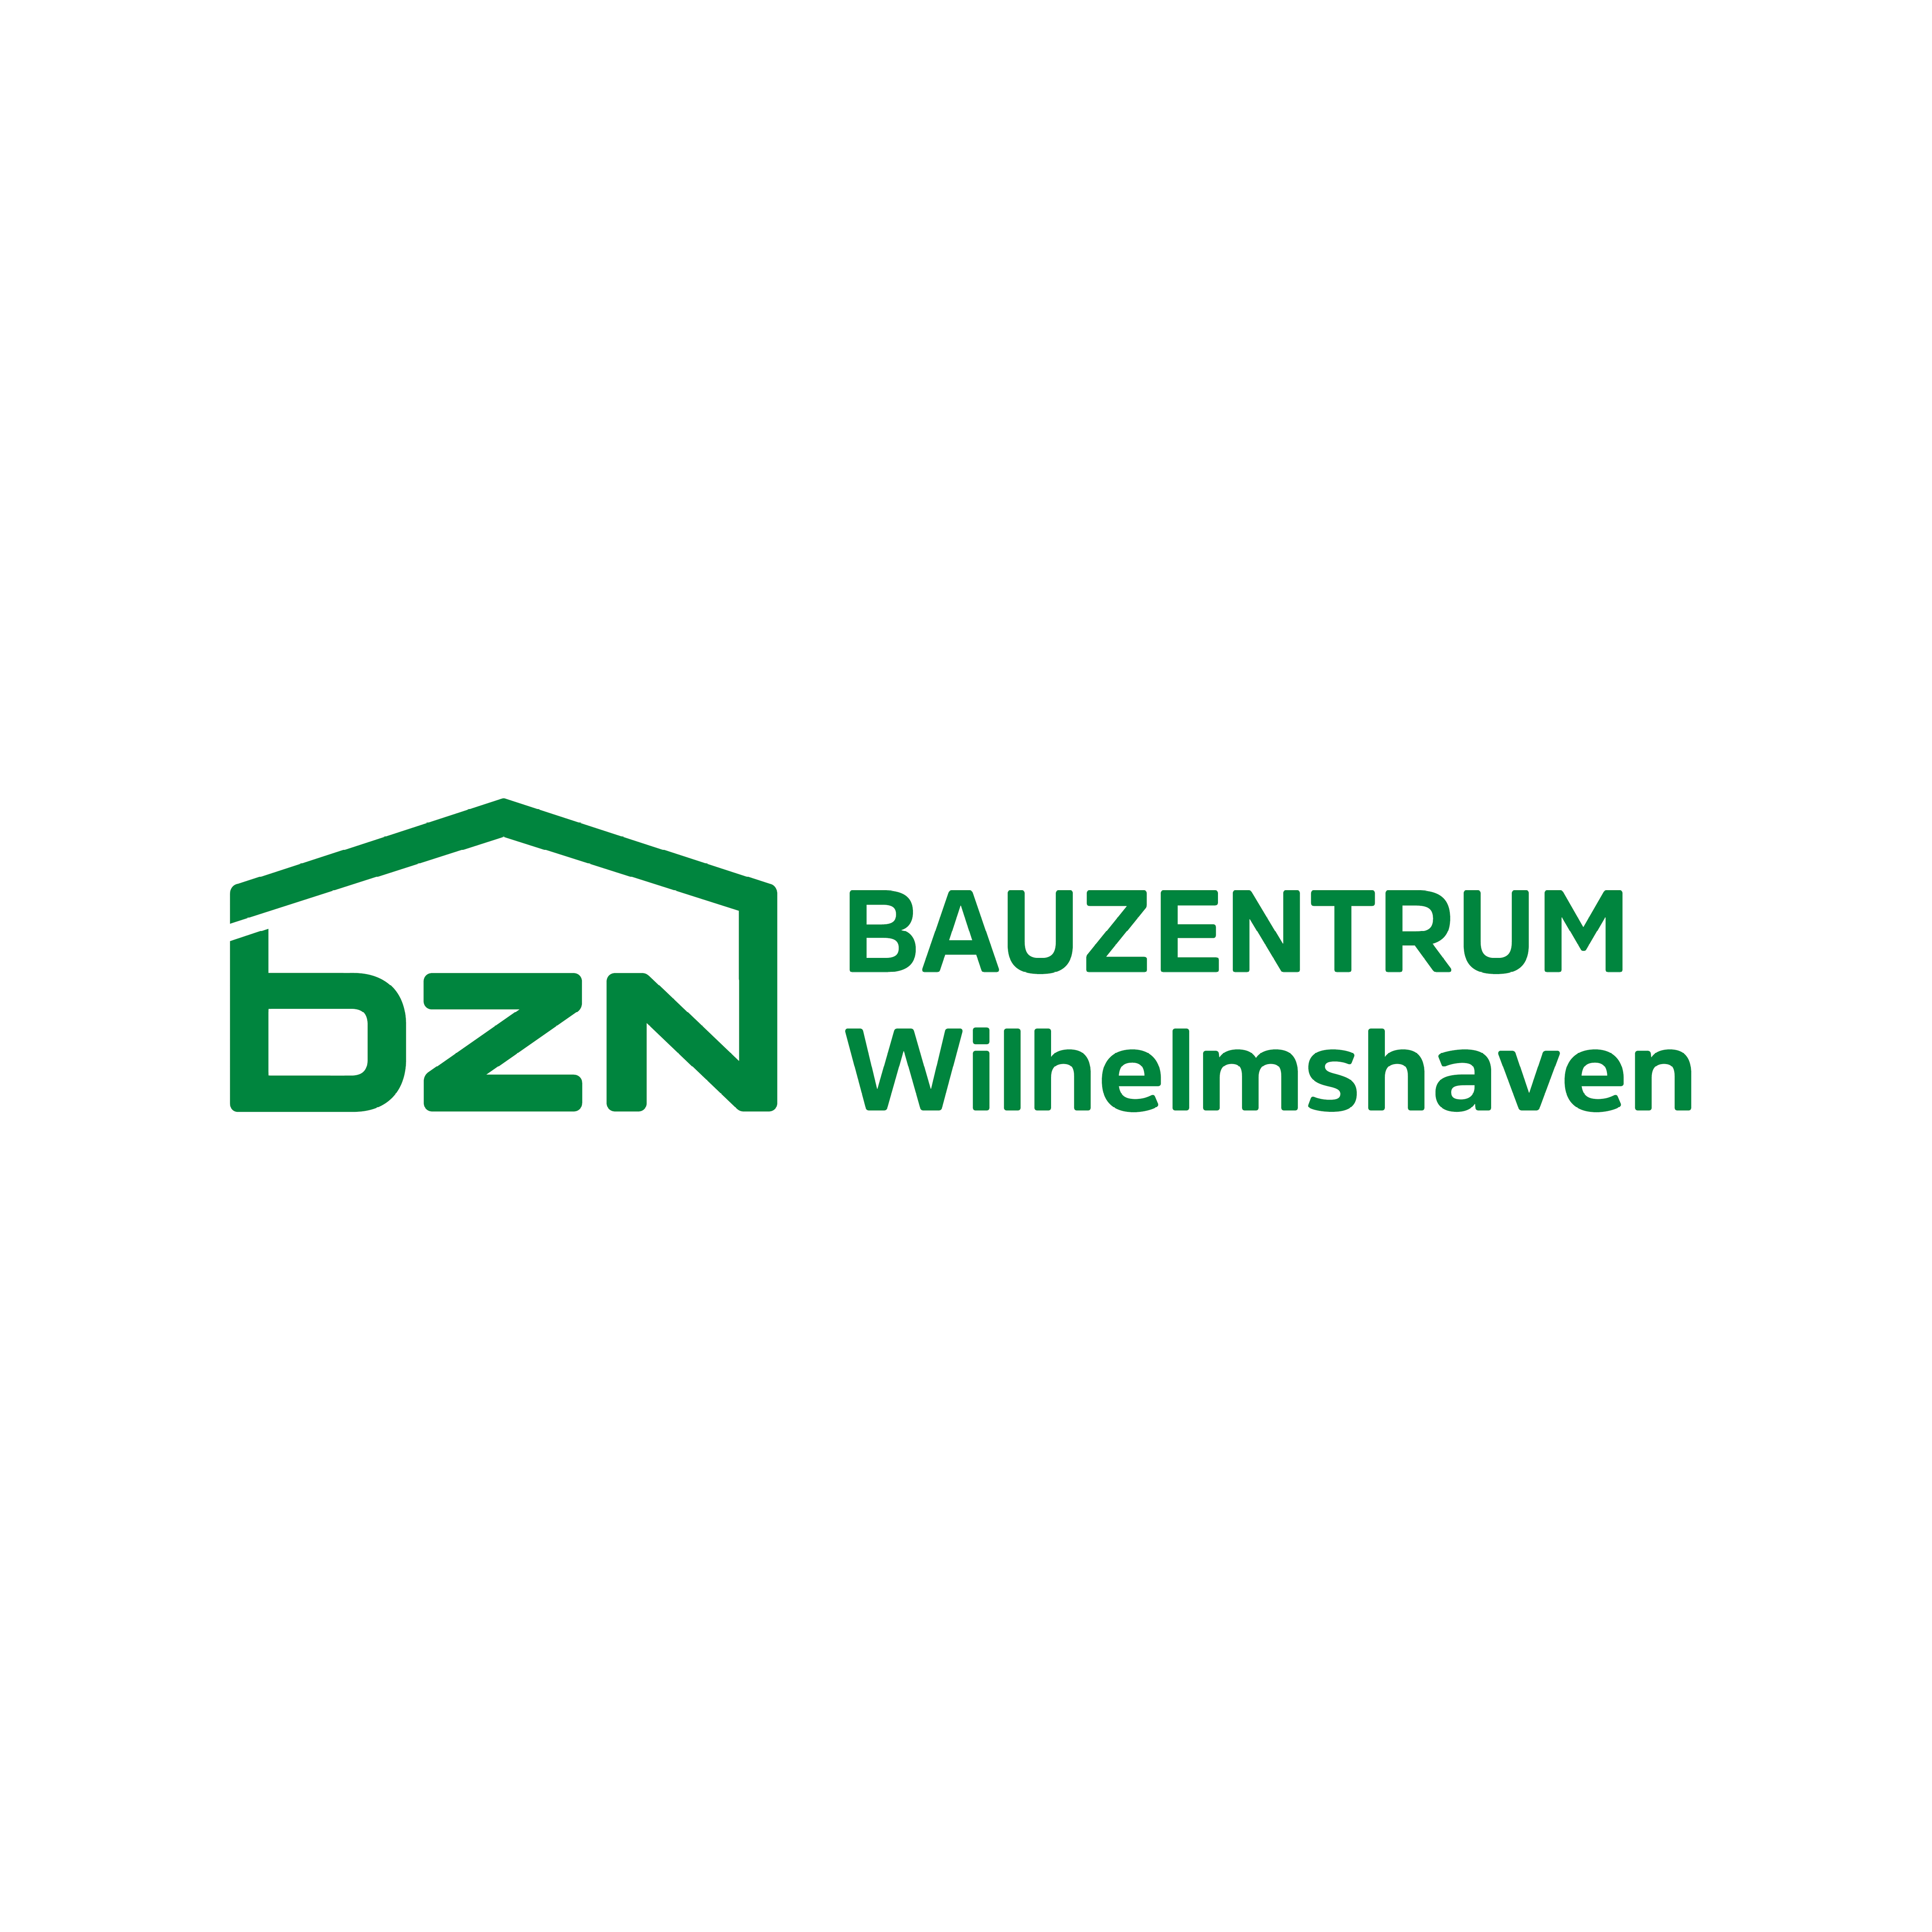 Kundenlogo BZN Bauzentrum Wilhelmshaven GmbH & Co. KG